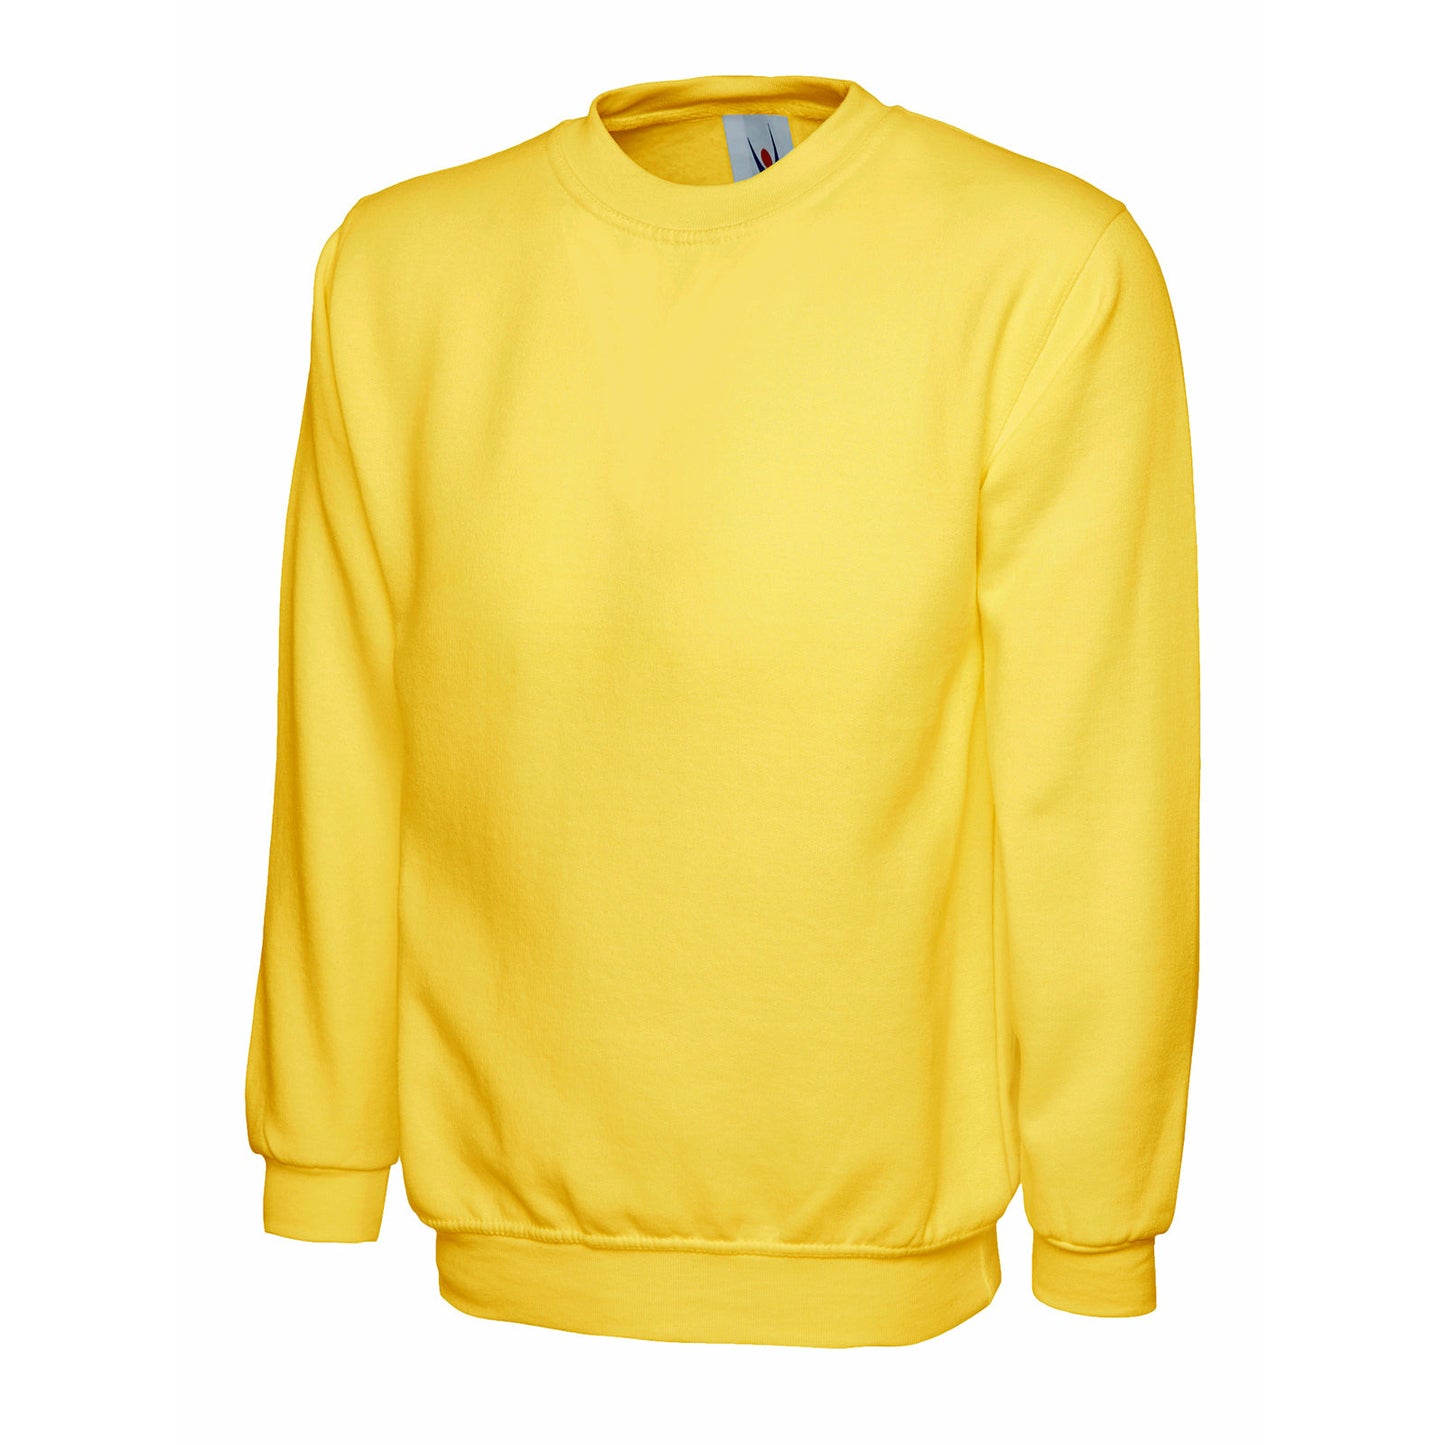 Childrens Sweatshirt Yellow